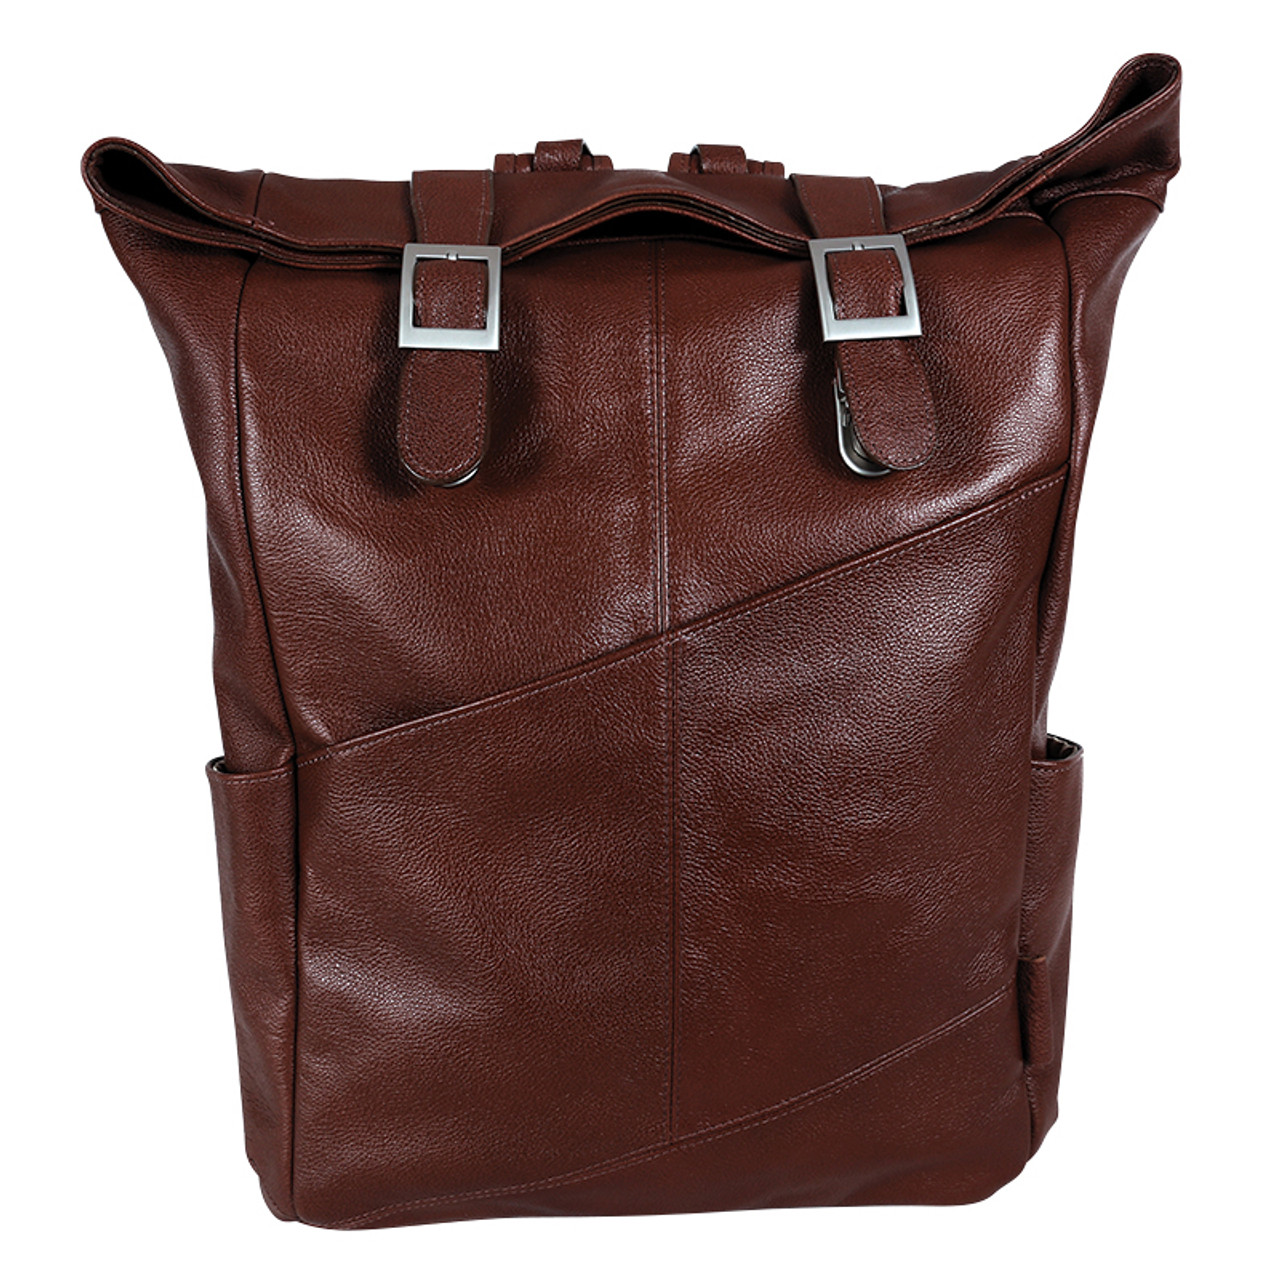 Franklin Covey Leather Backpack Burnt Orange Pockets Travel Adjustable  Straps